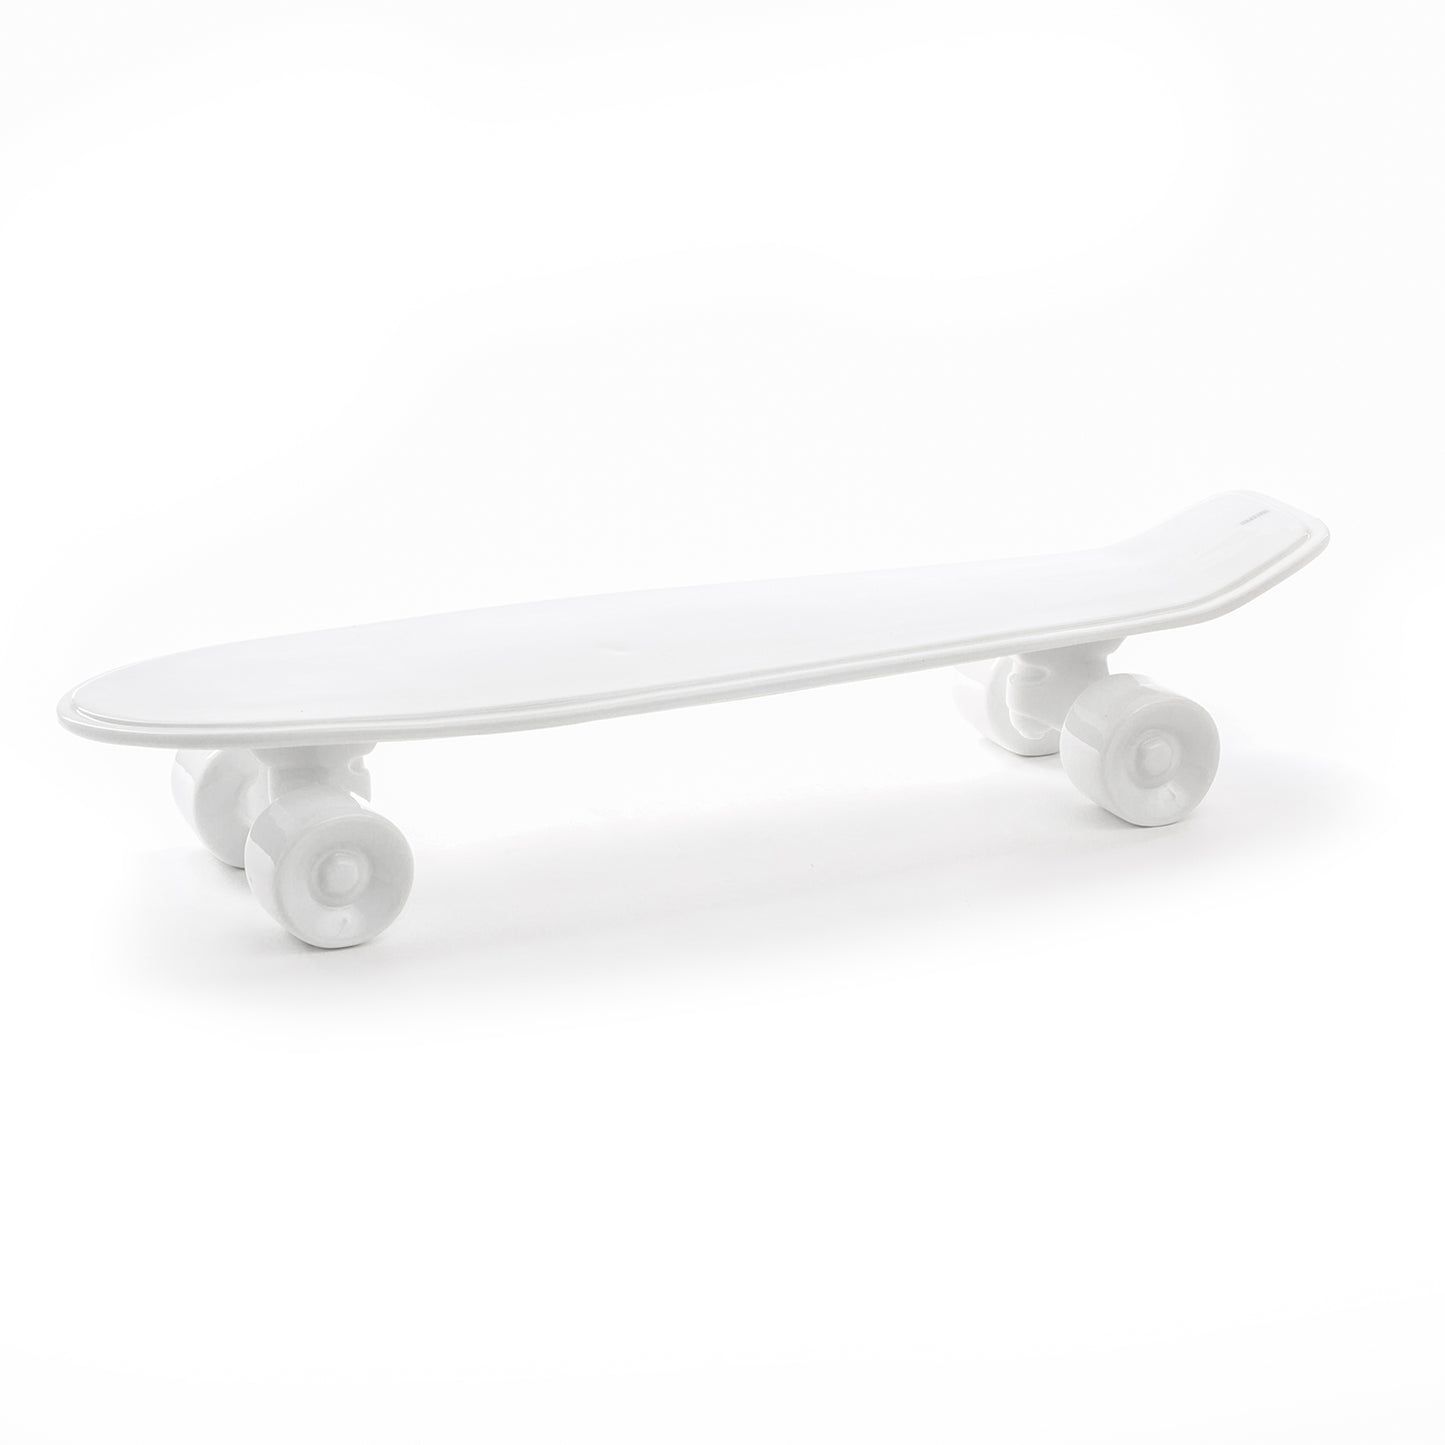 Skateboard - White Porcelain Tray